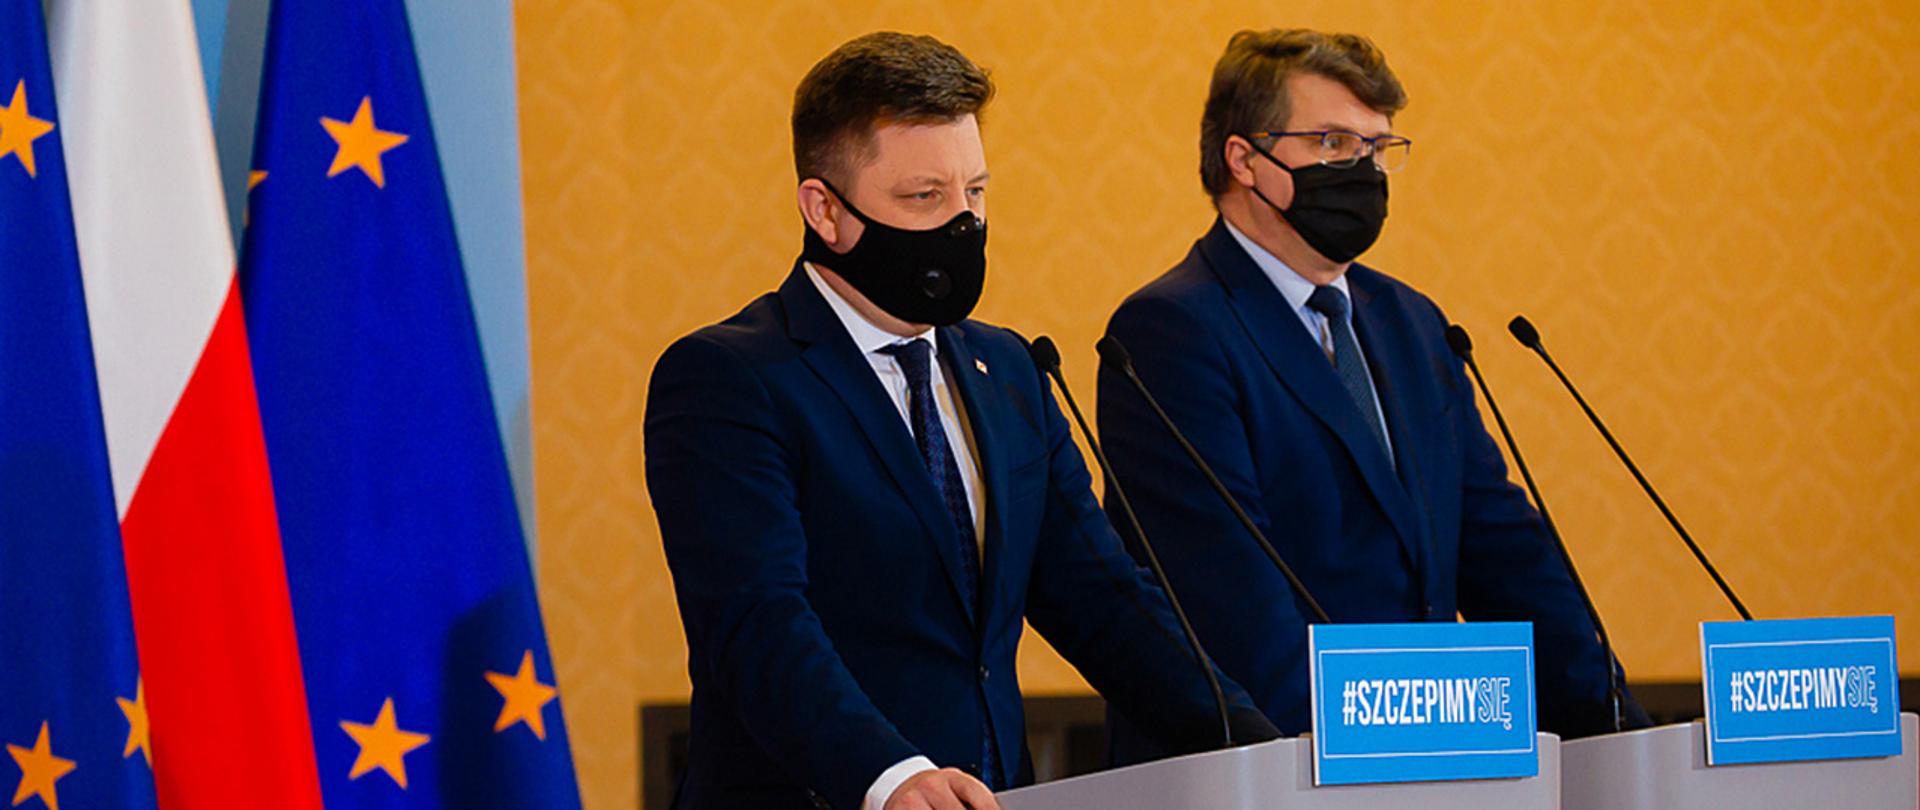 Na zdjęciu widać ministra Michała Dworczyk i wiceministra Macieja Wąsika stojących przy mównicach w trakcie konferencji prasowej. Minister Dworczyk zabiera głos. W tle widać flagi Polski i UE.